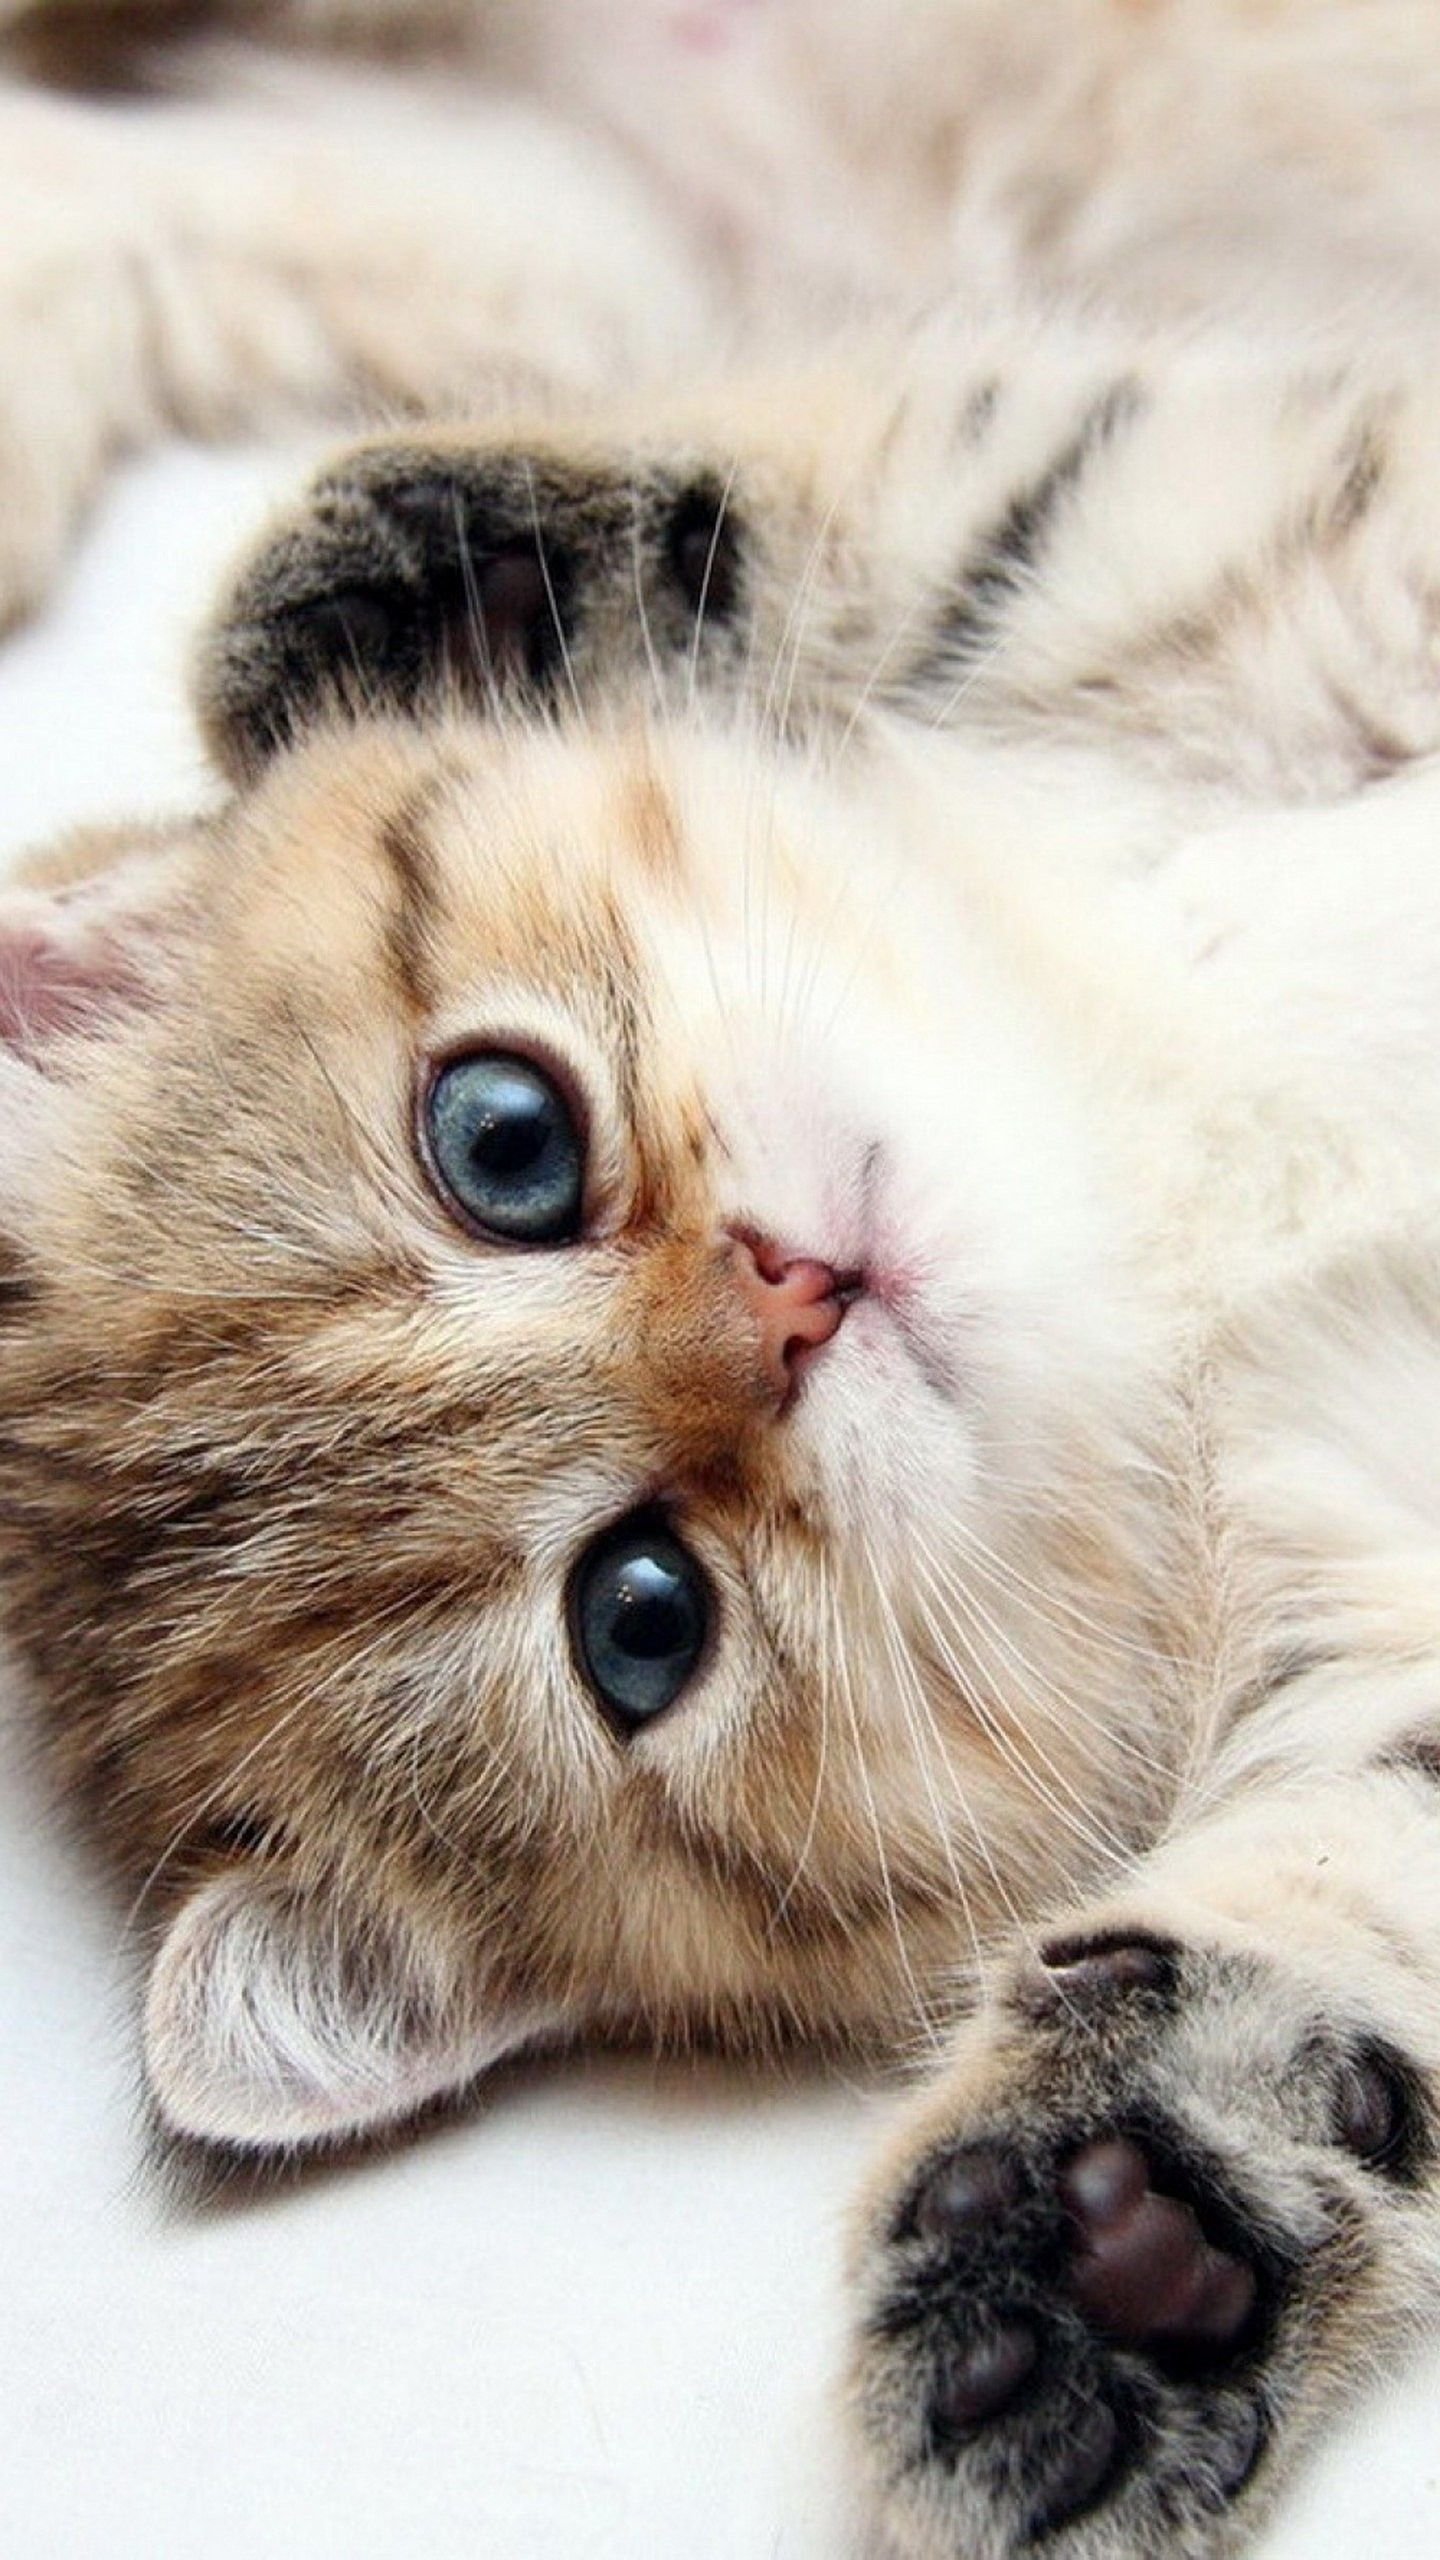 Cute Cat Kitten